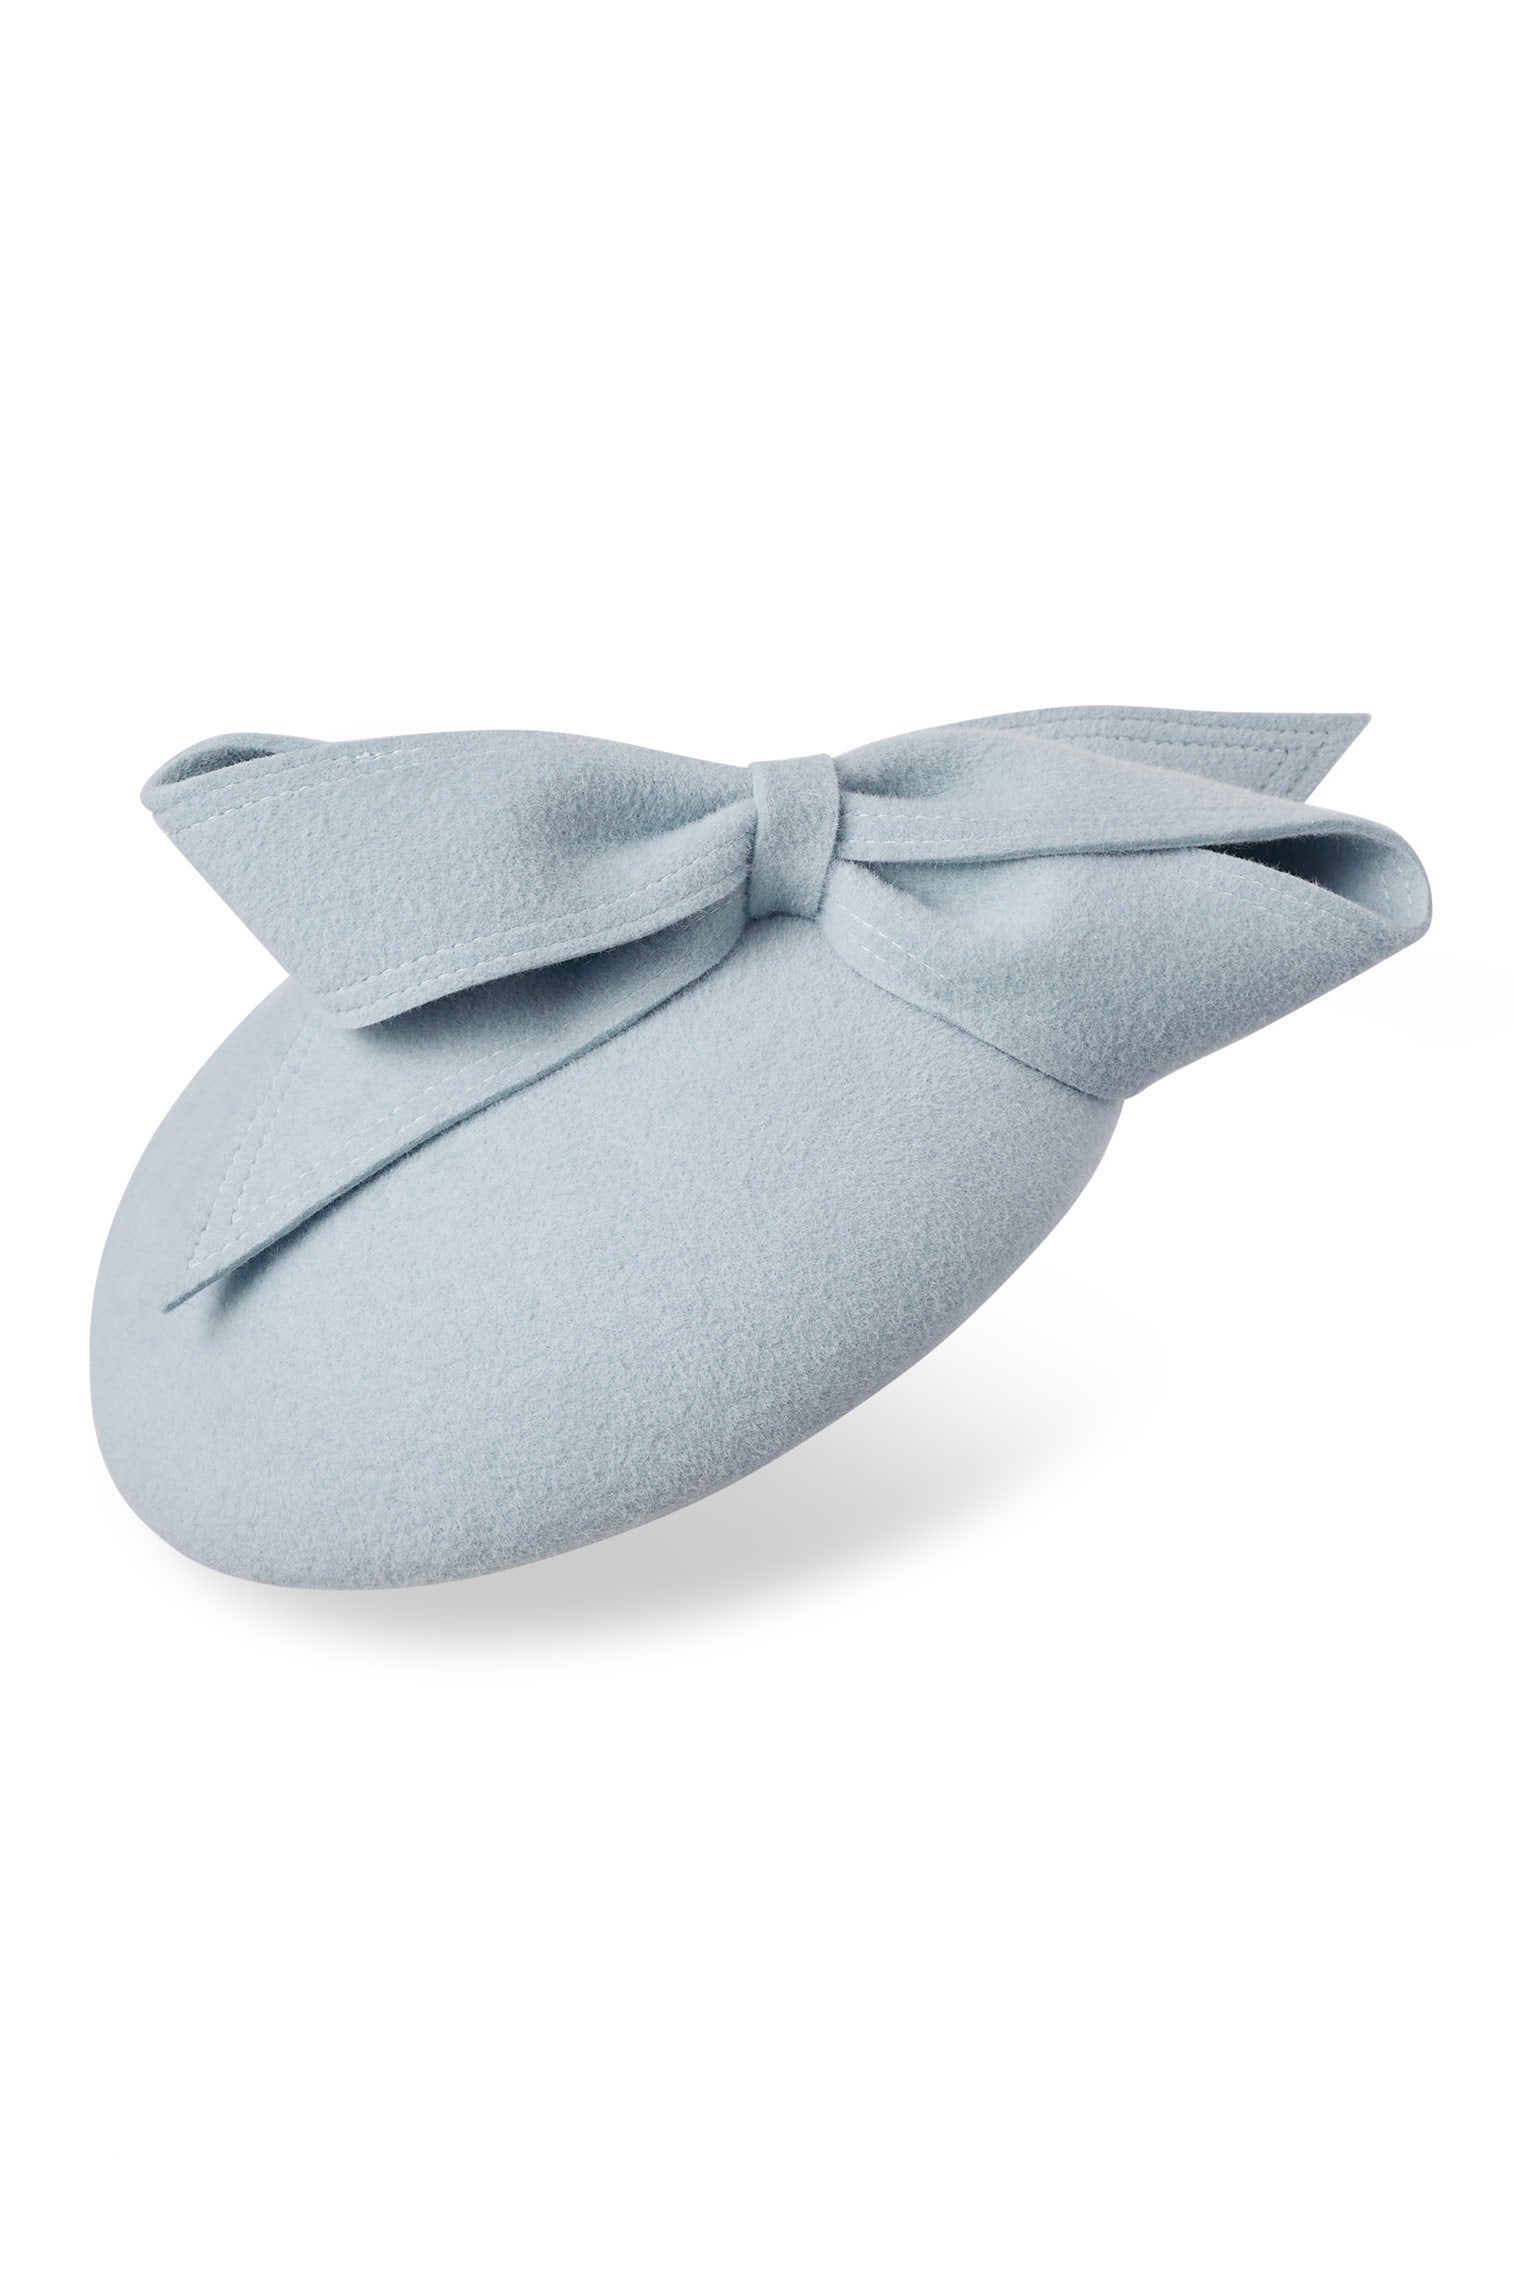 Lana Light Blue Button Hat - Women’s Hats - Lock & Co. Hatters London UK